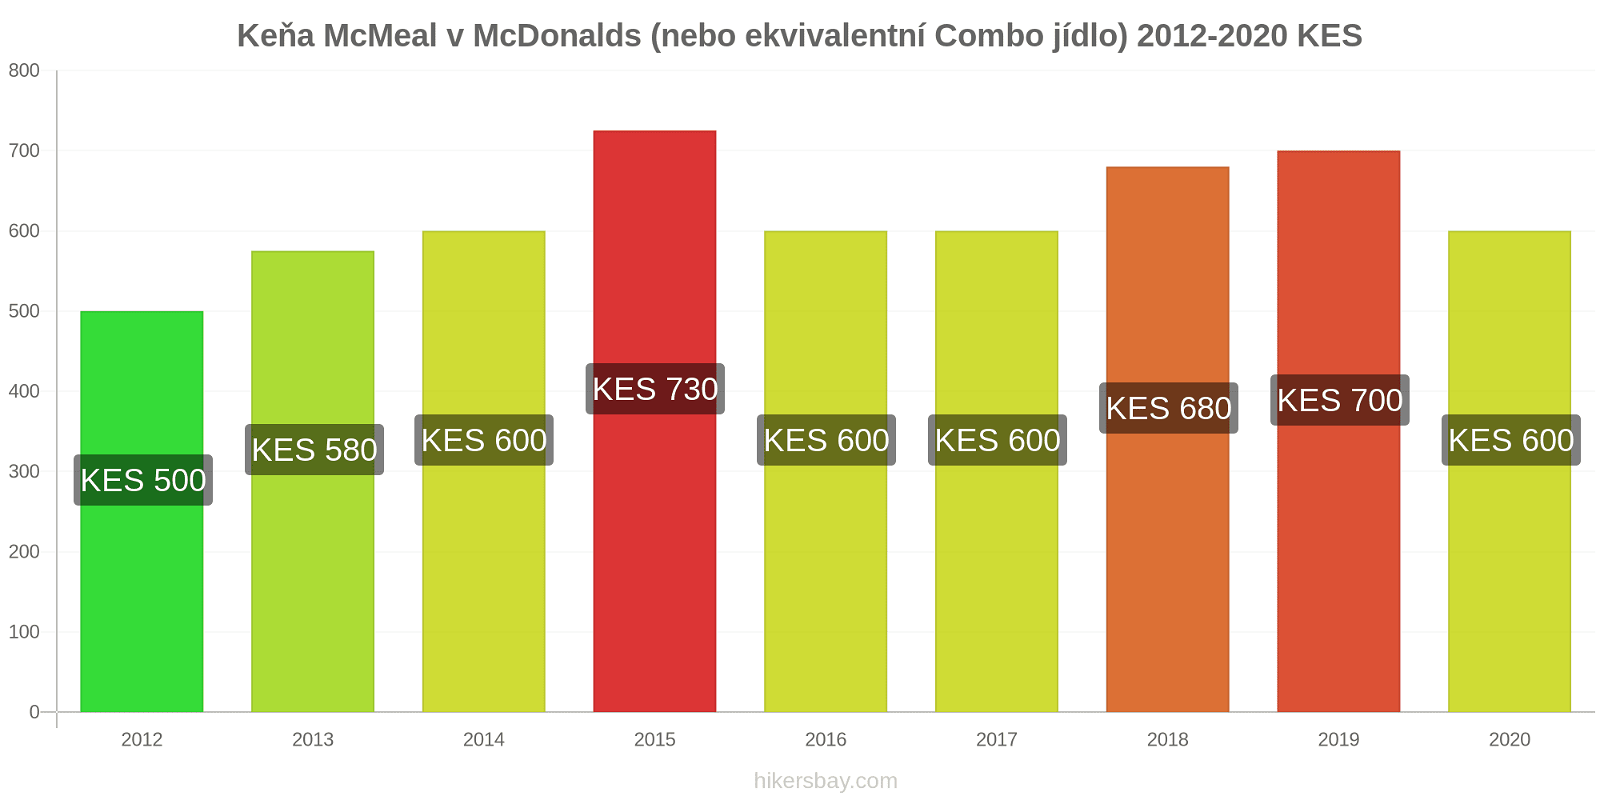 Keňa změny cen McMeal v McDonalds (nebo ekvivalentní Combo jídlo) hikersbay.com